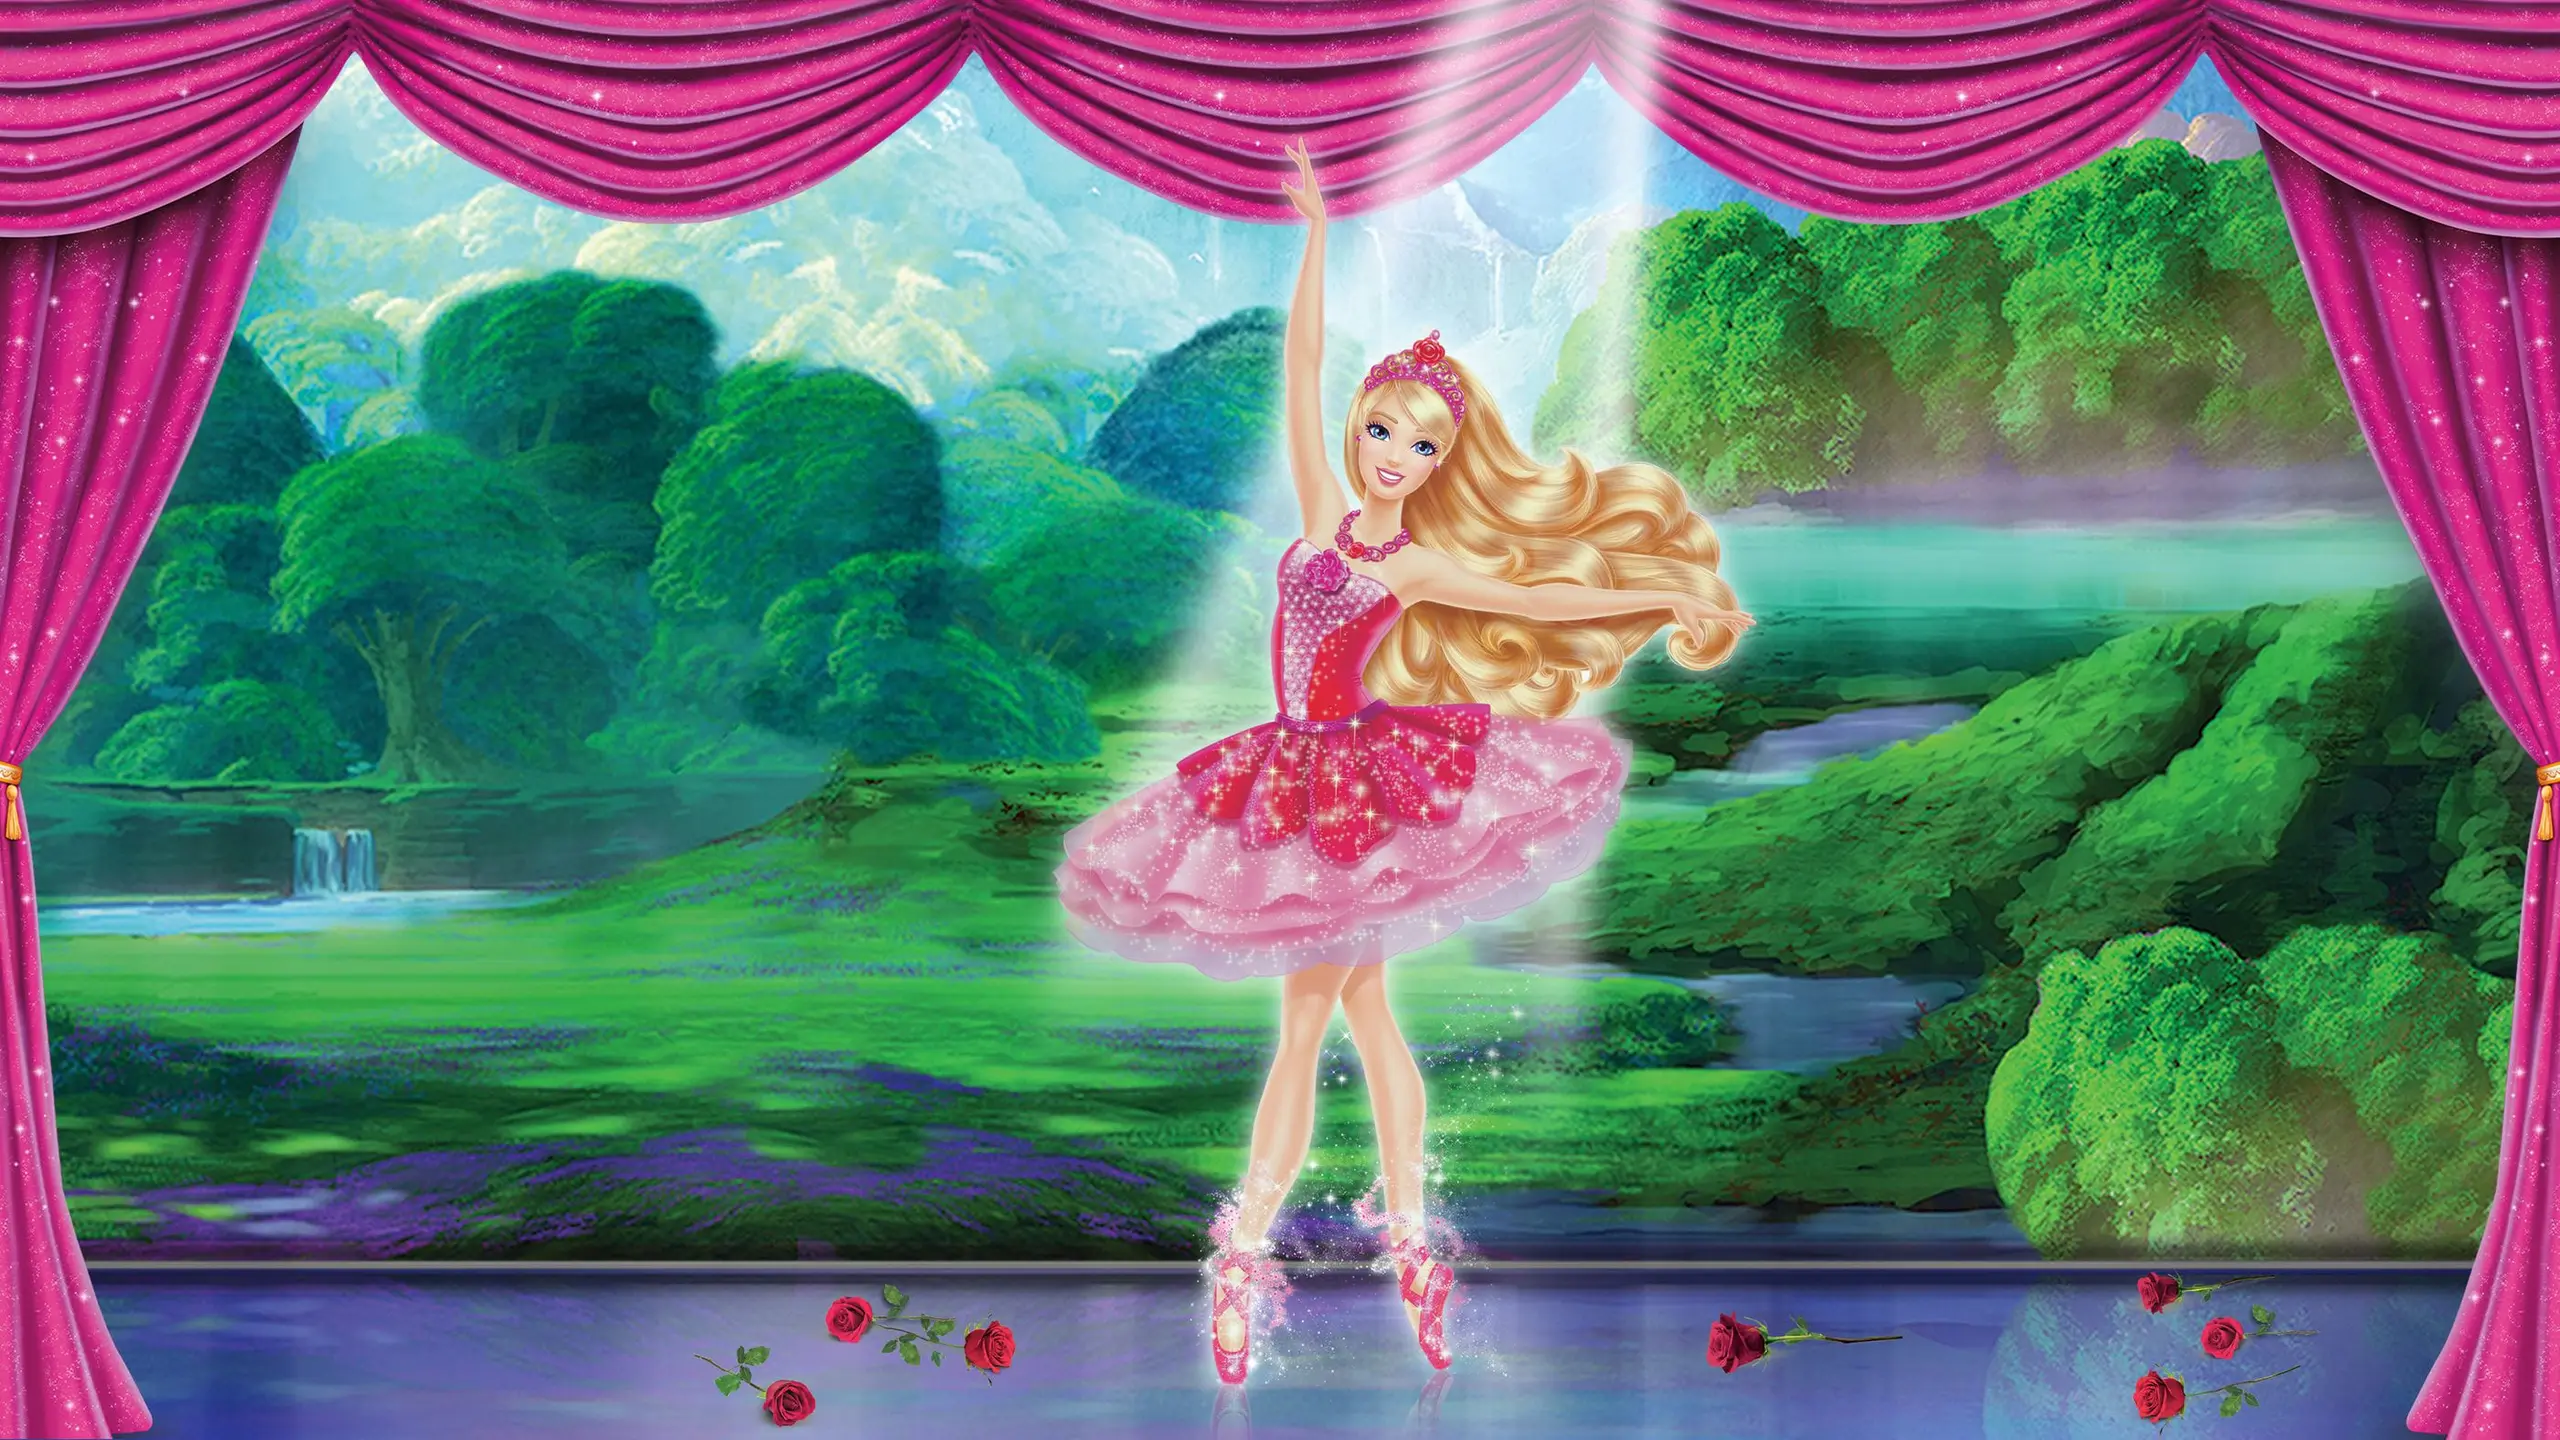 Barbie - Die verzauberten Ballettschuhe